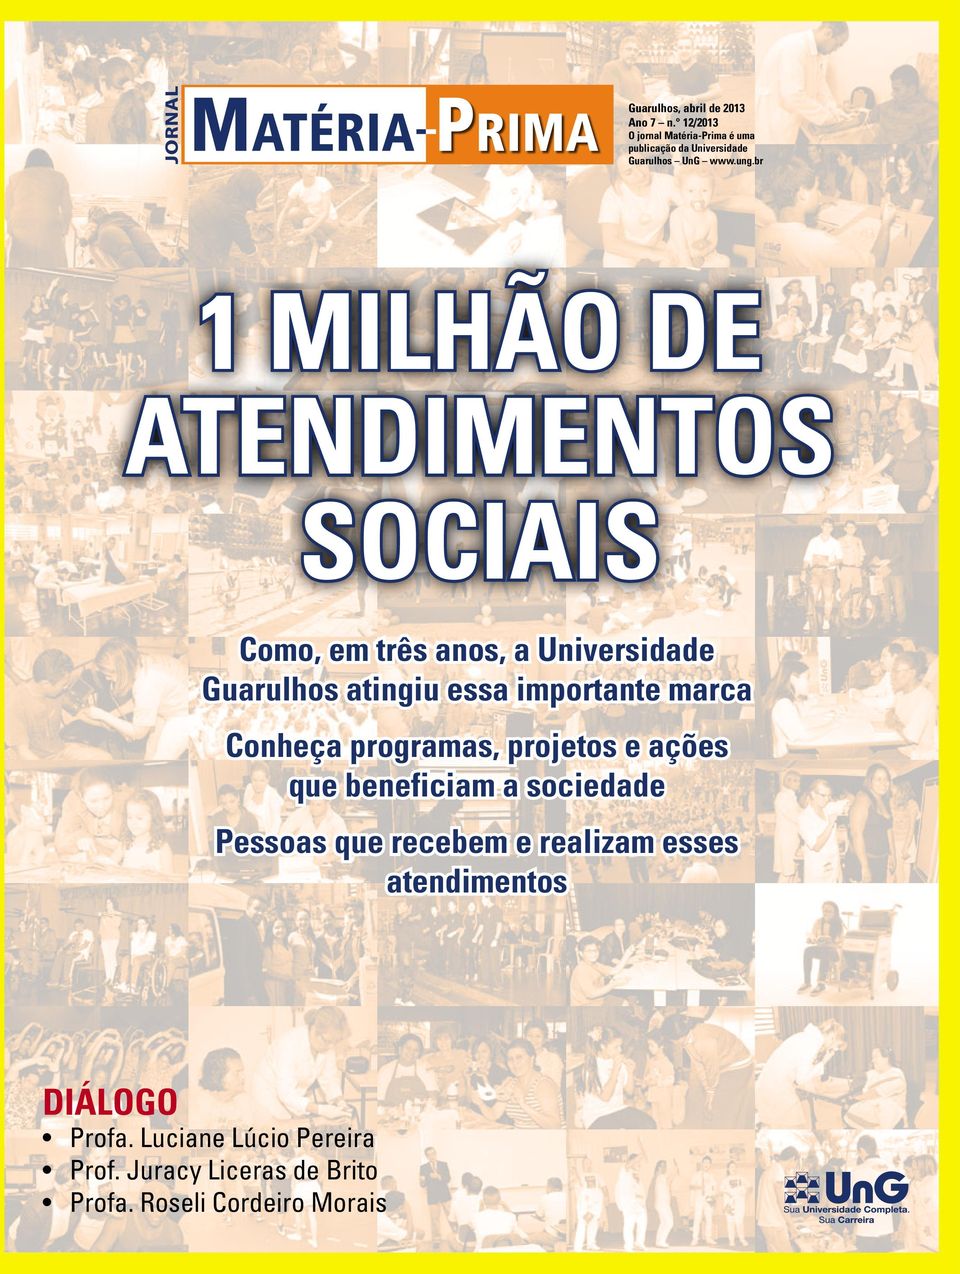 br 1 milhão de atendimentos sociais Como, em três anos, a Universidade Guarulhos atingiu essa importante